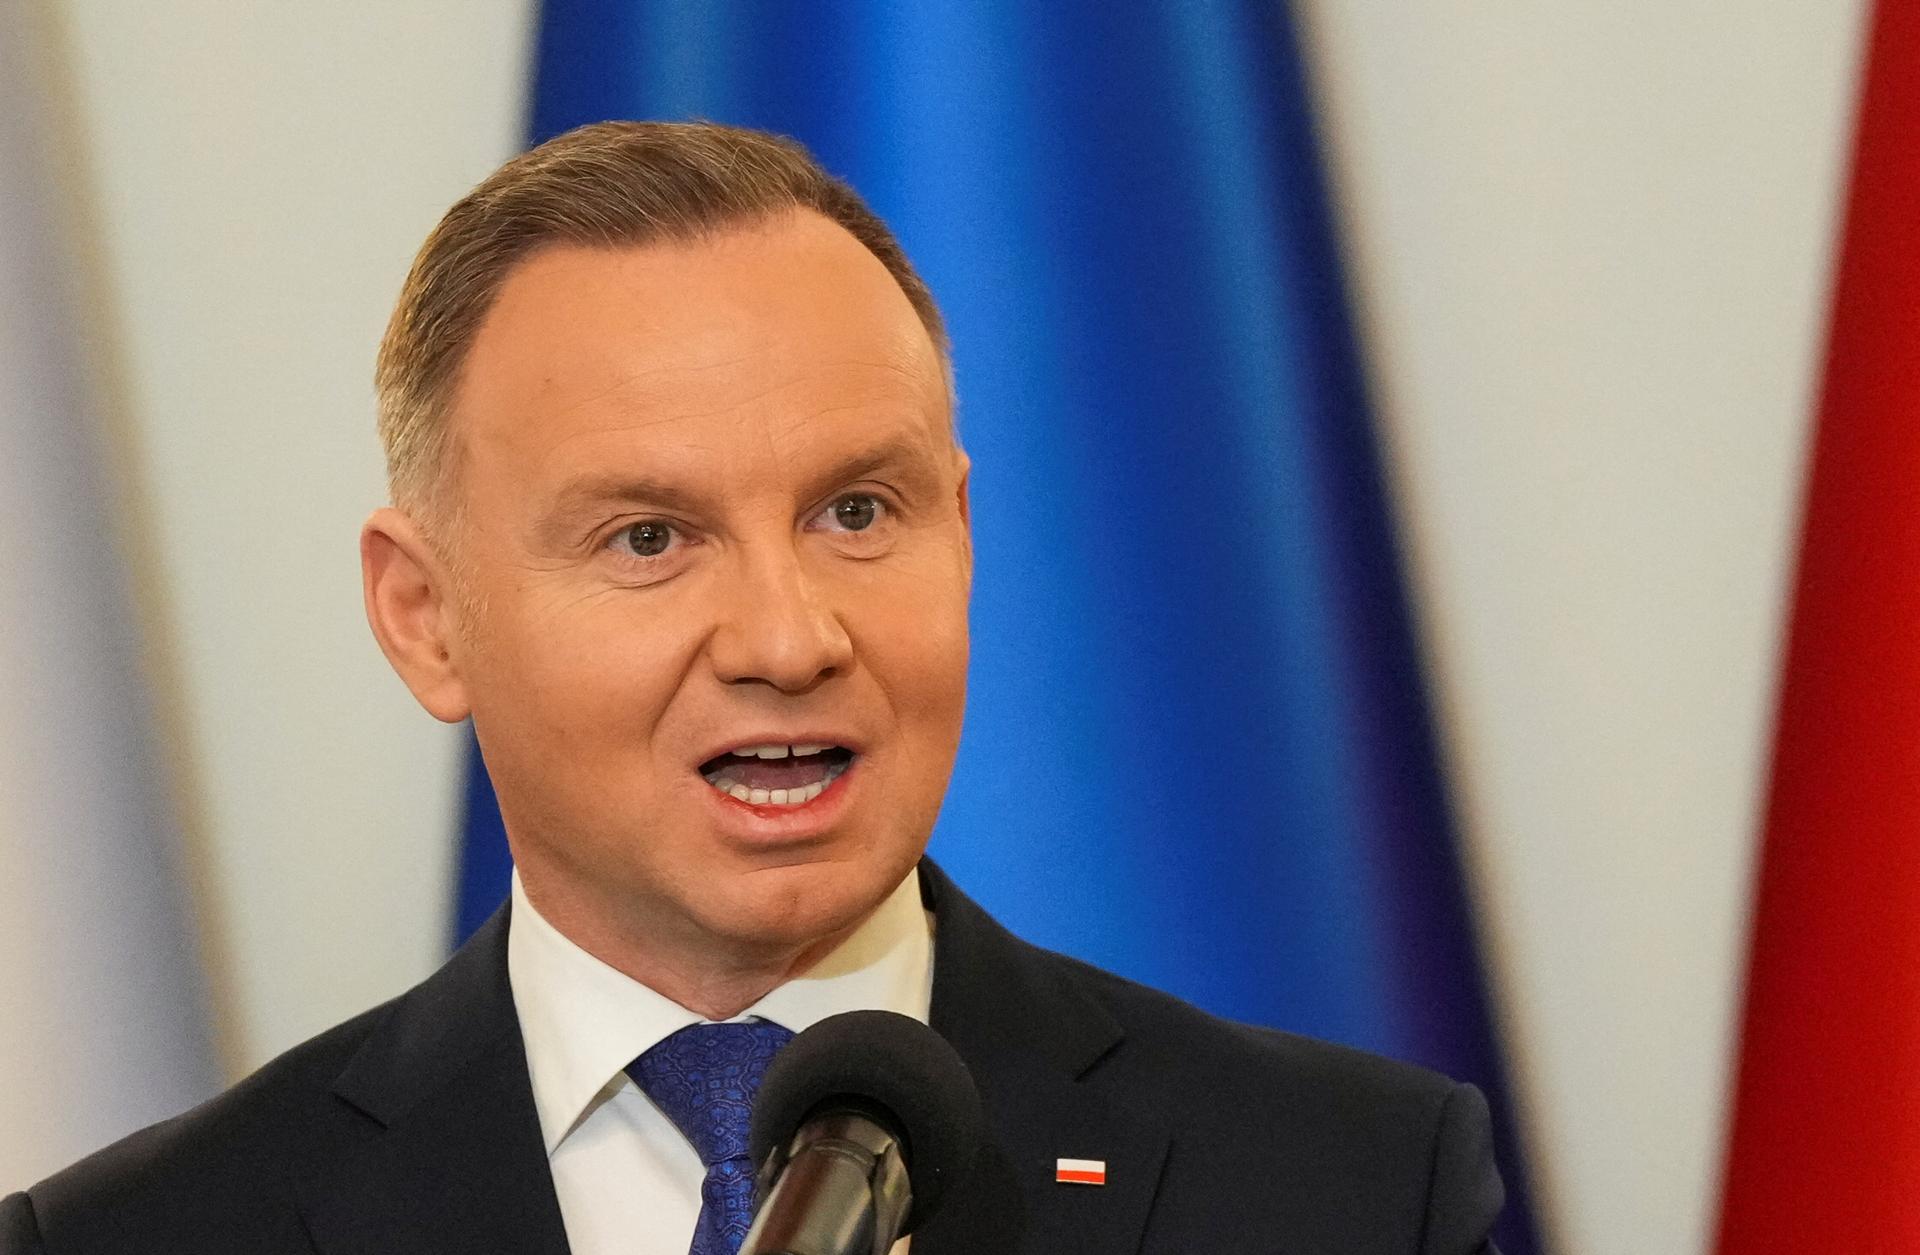 Poľský prezident vetoval Tuskovej vláde prvý zákon, kvôli konfliktu o médiá